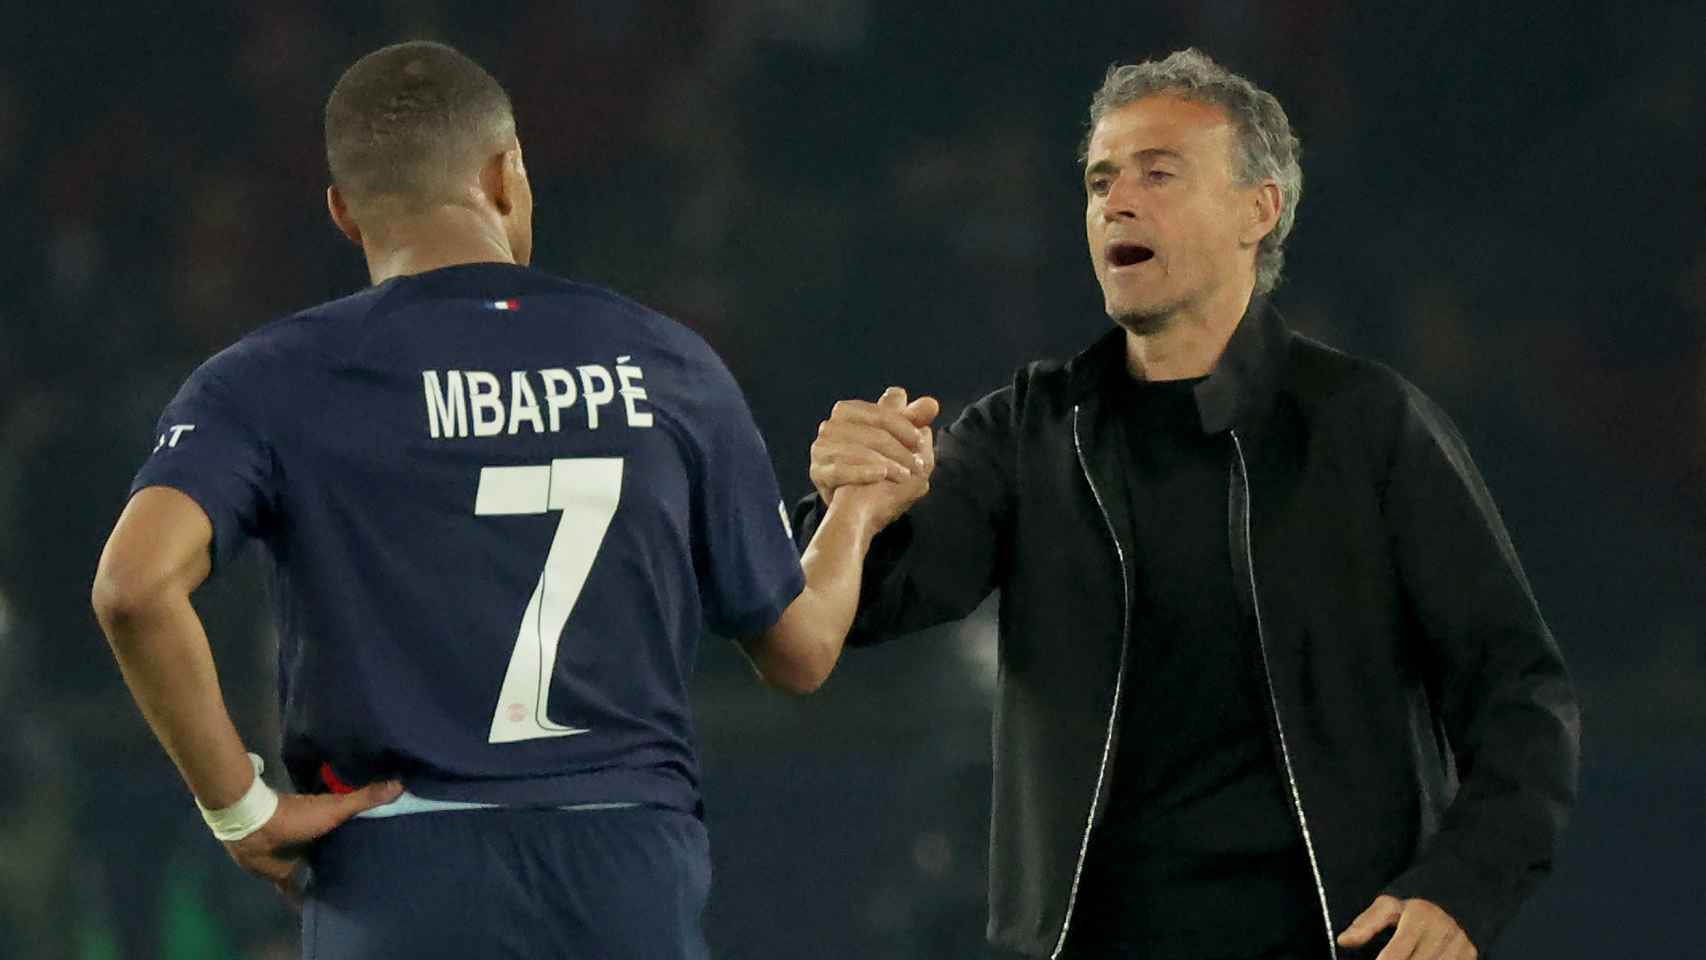 Luis Enrique saluda a Kylian Mbappé tras la eliminación del PSG en Champions